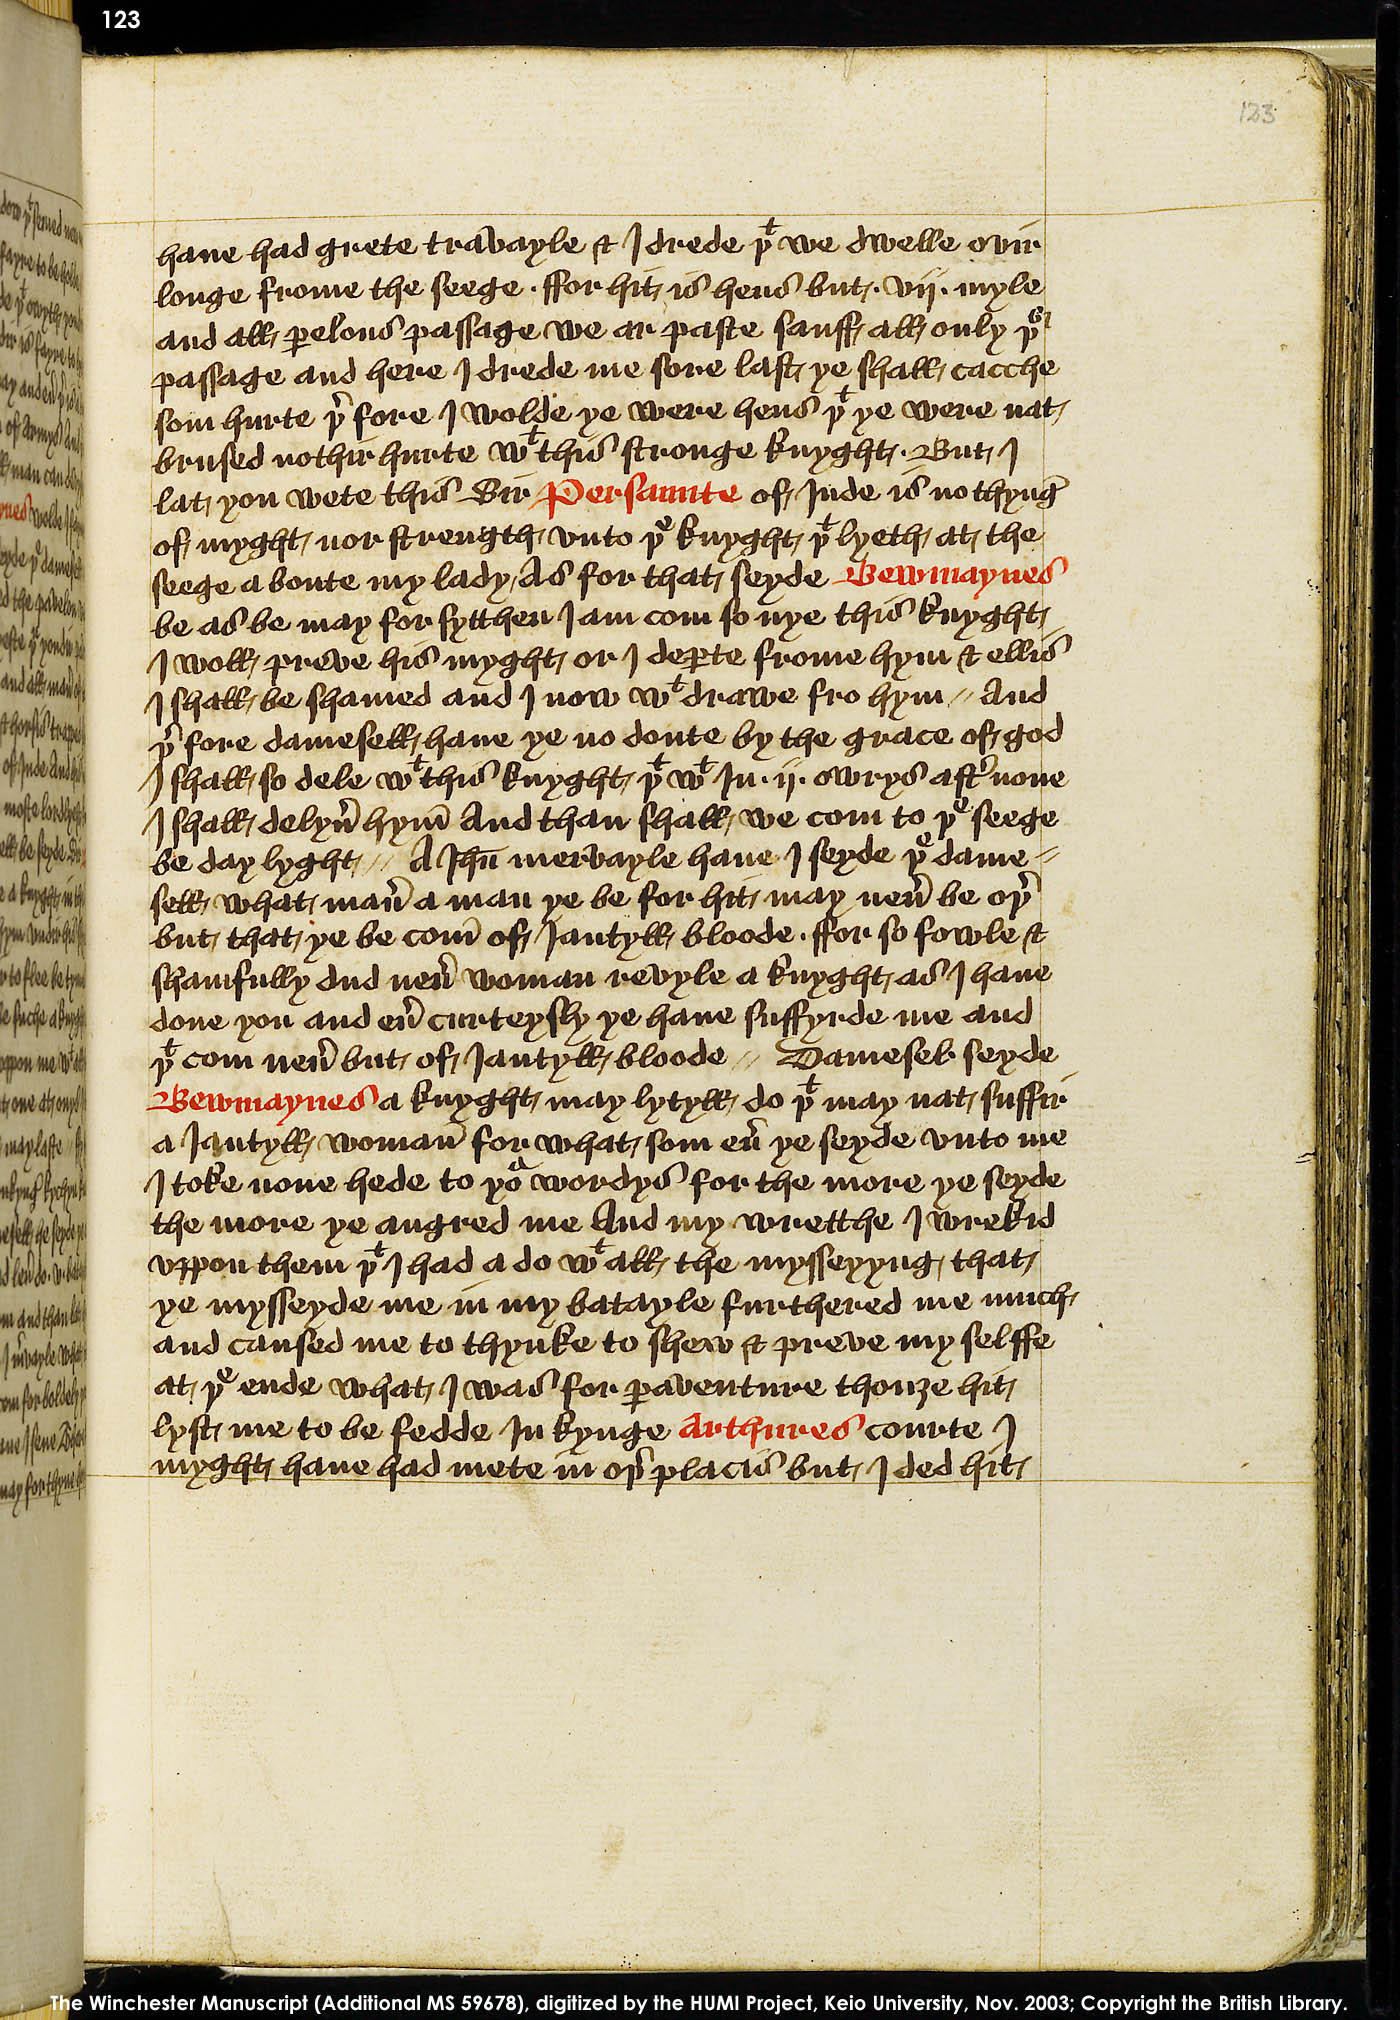 Folio 123r